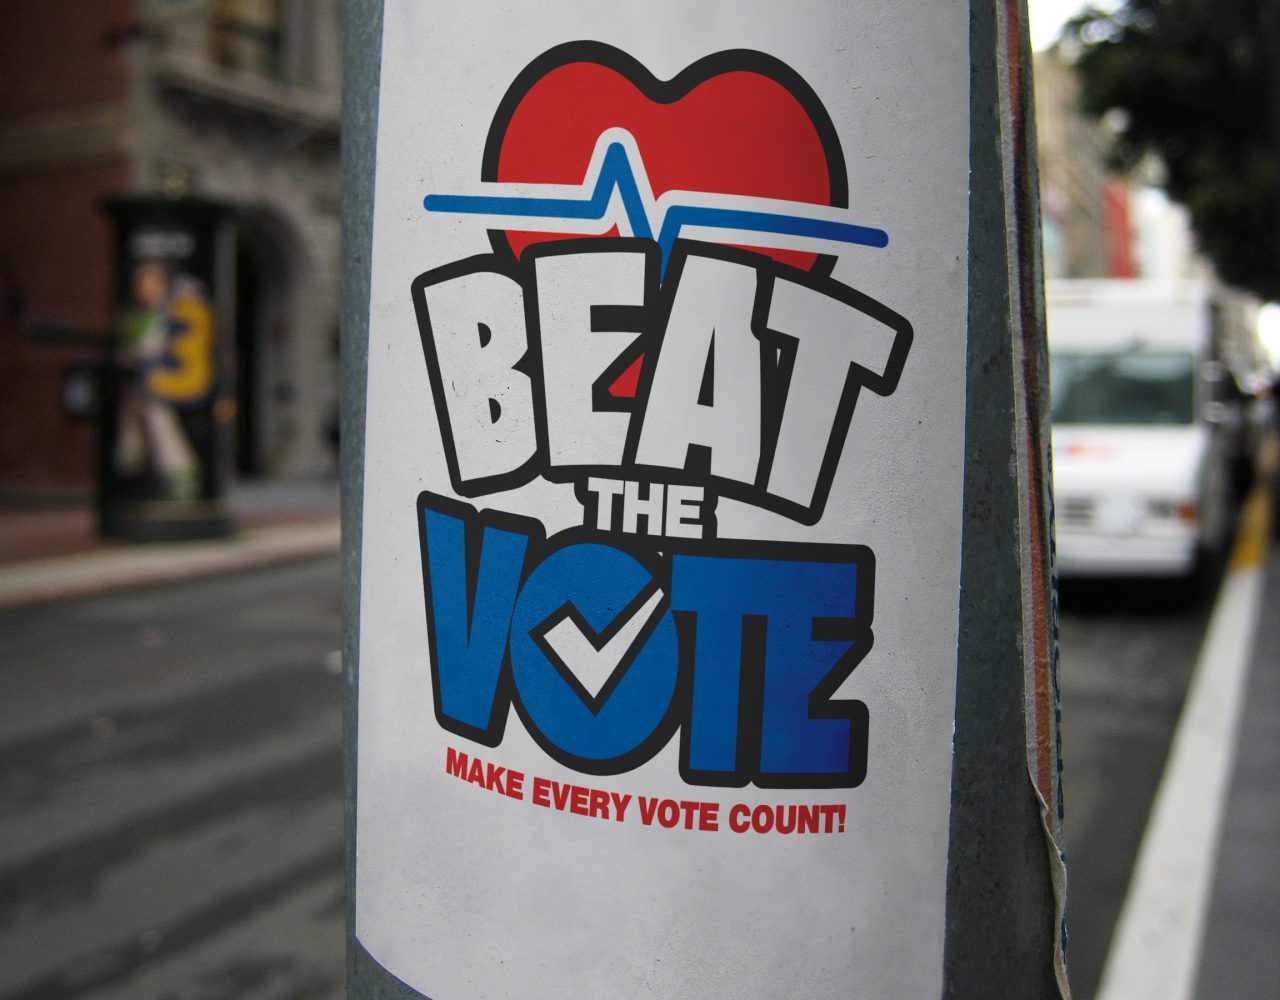 Beat the Vote logo